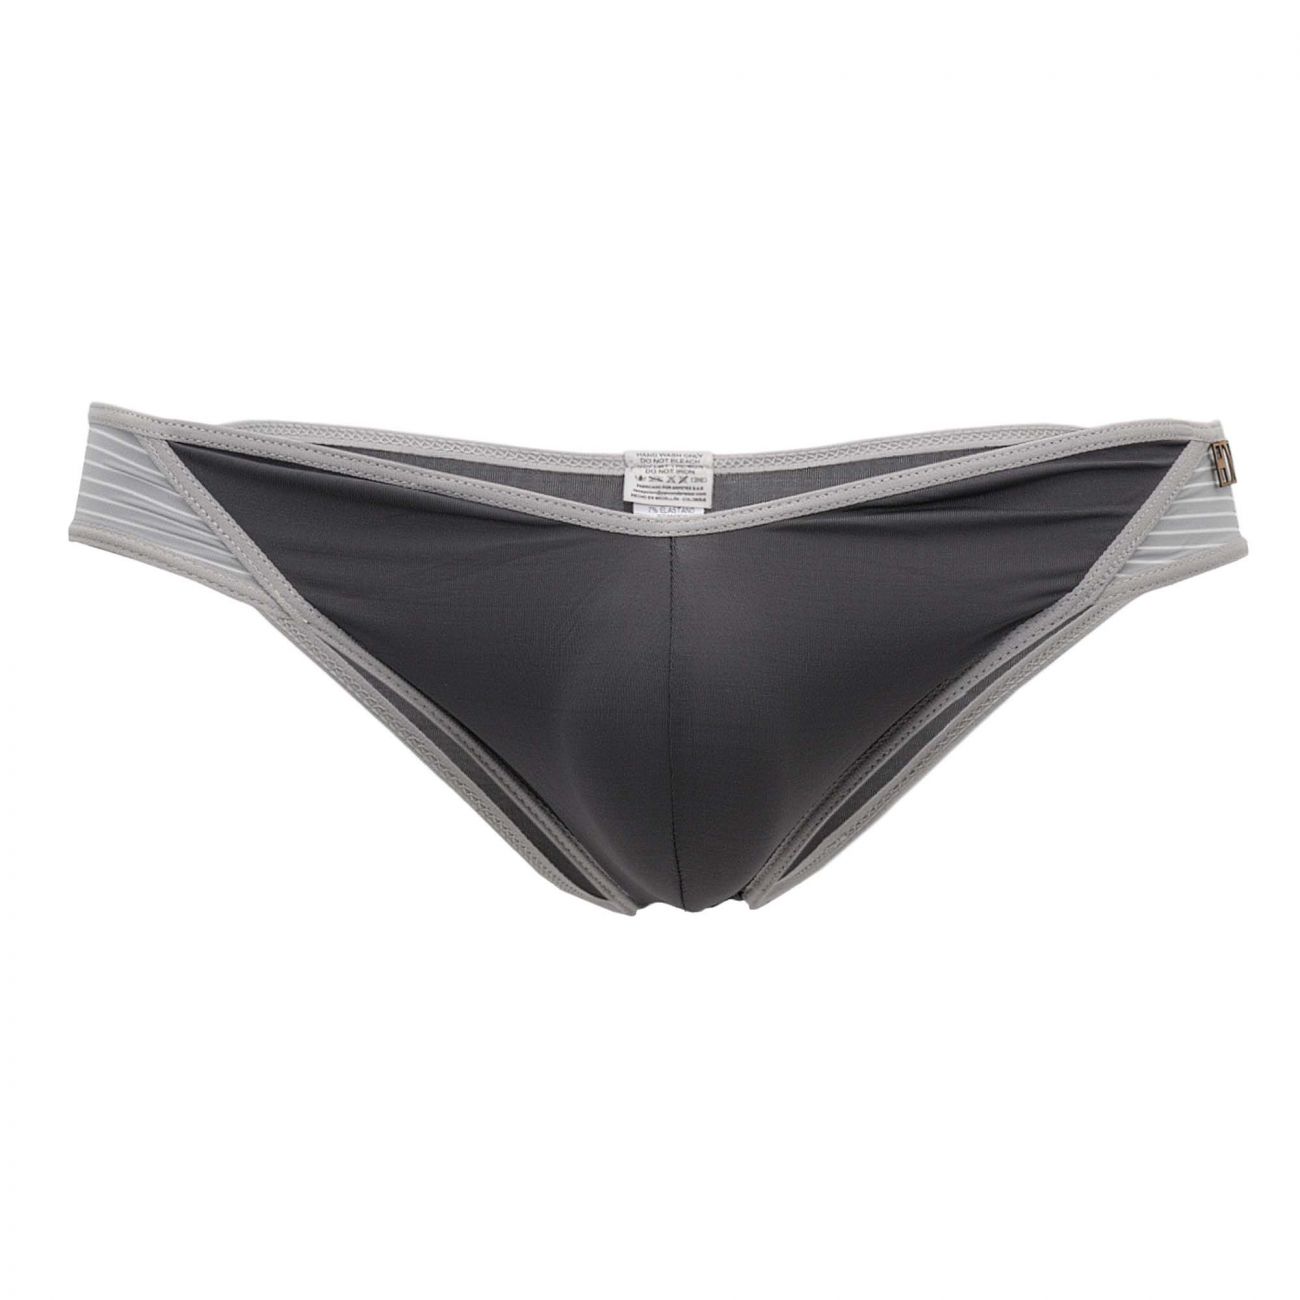 Mens Underwear: Hidden 959 Microfiber Bikini | eBay